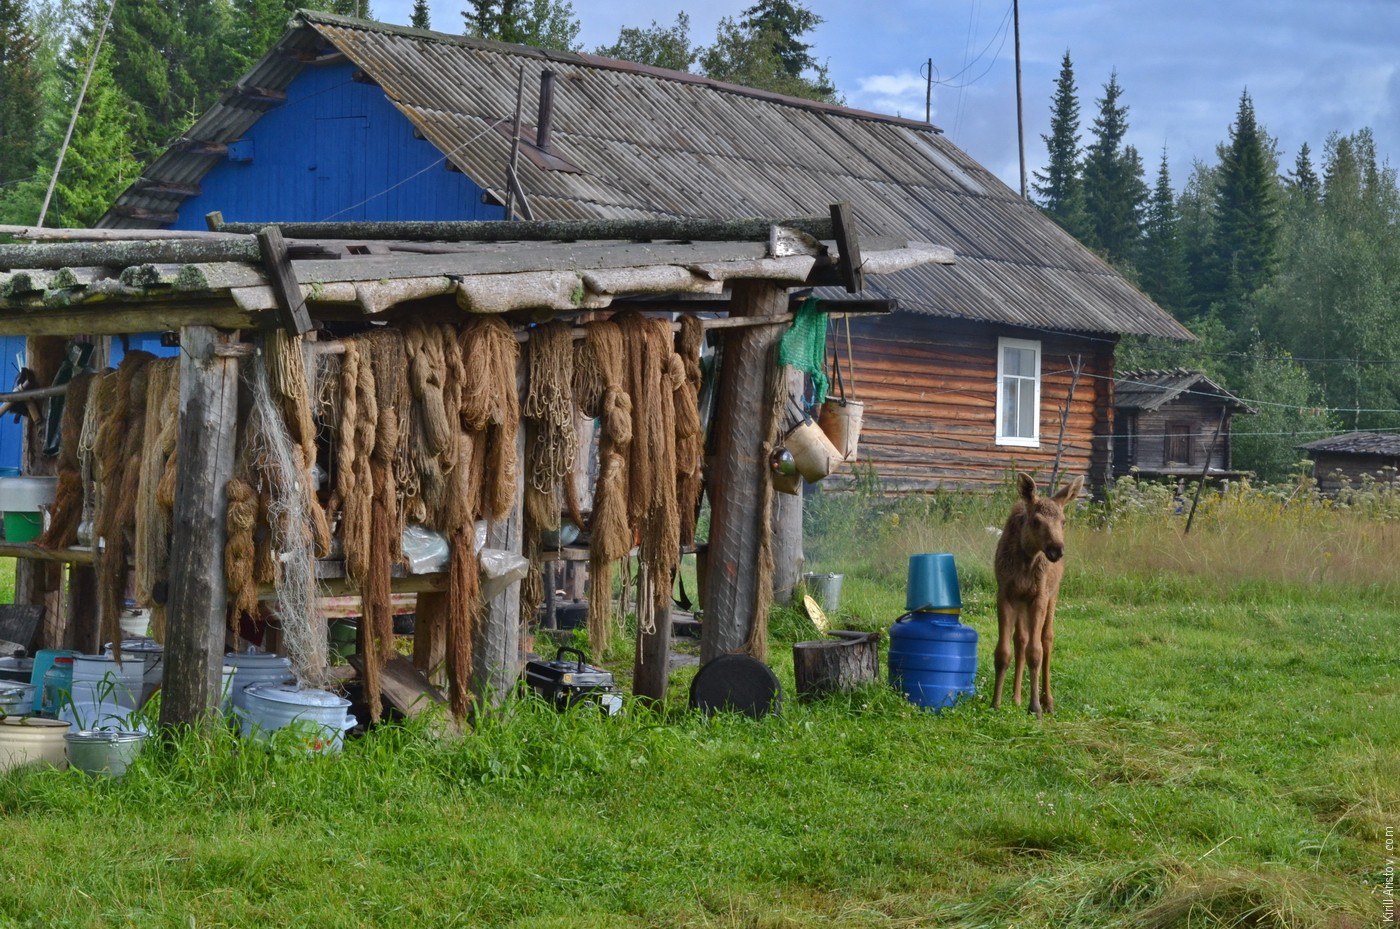 Лосёнок в деревне хантов, Location: Деревня Ярсино на реке Демьянка. Уватский район, Тюменская область, Россия.